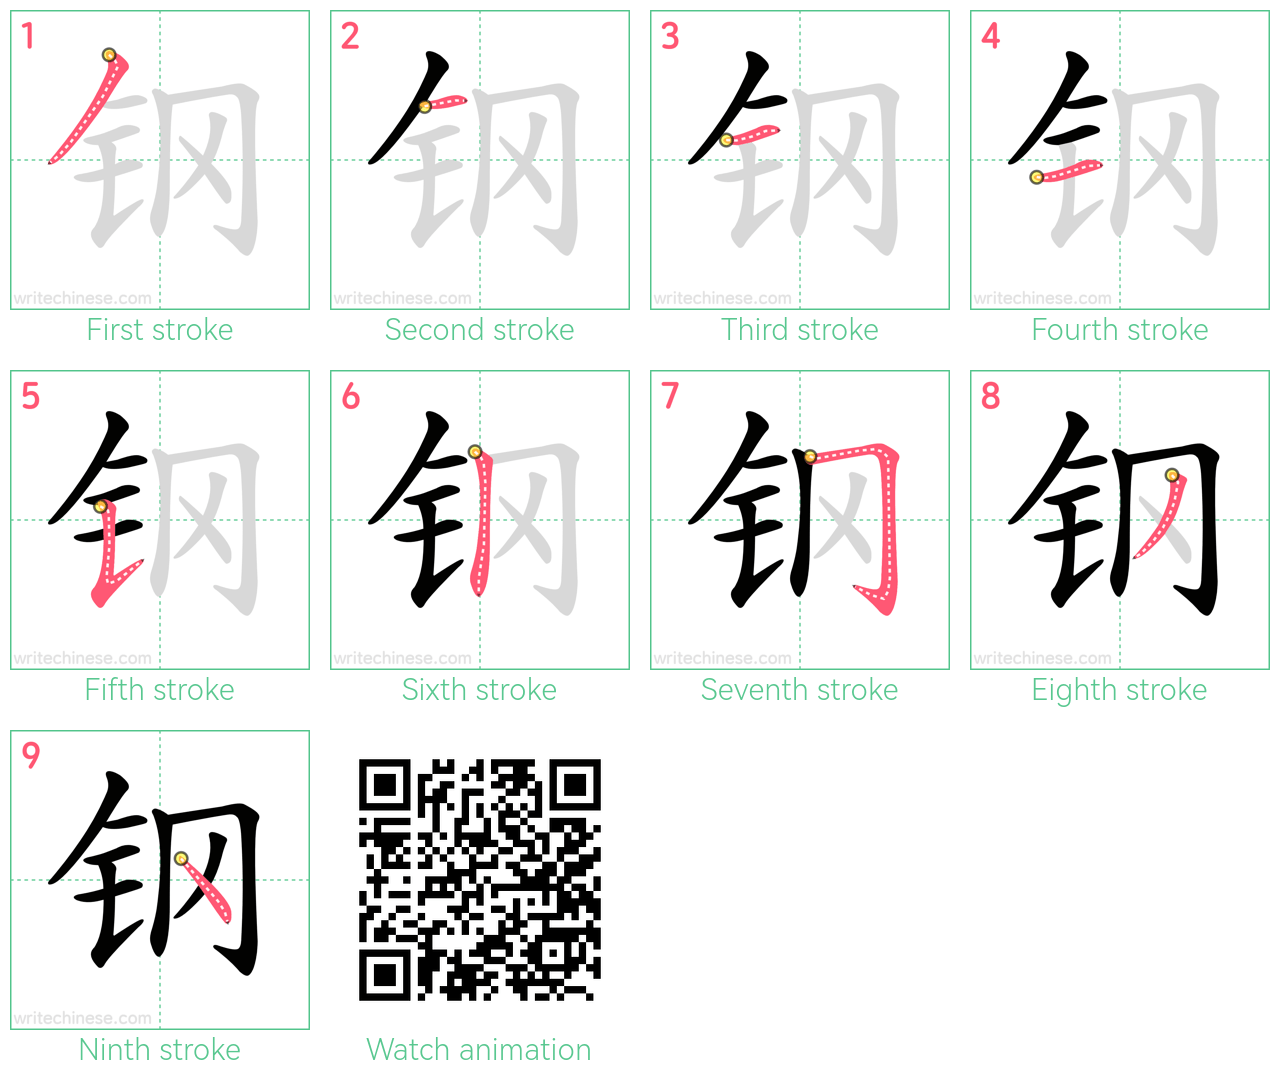 钢 step-by-step stroke order diagrams